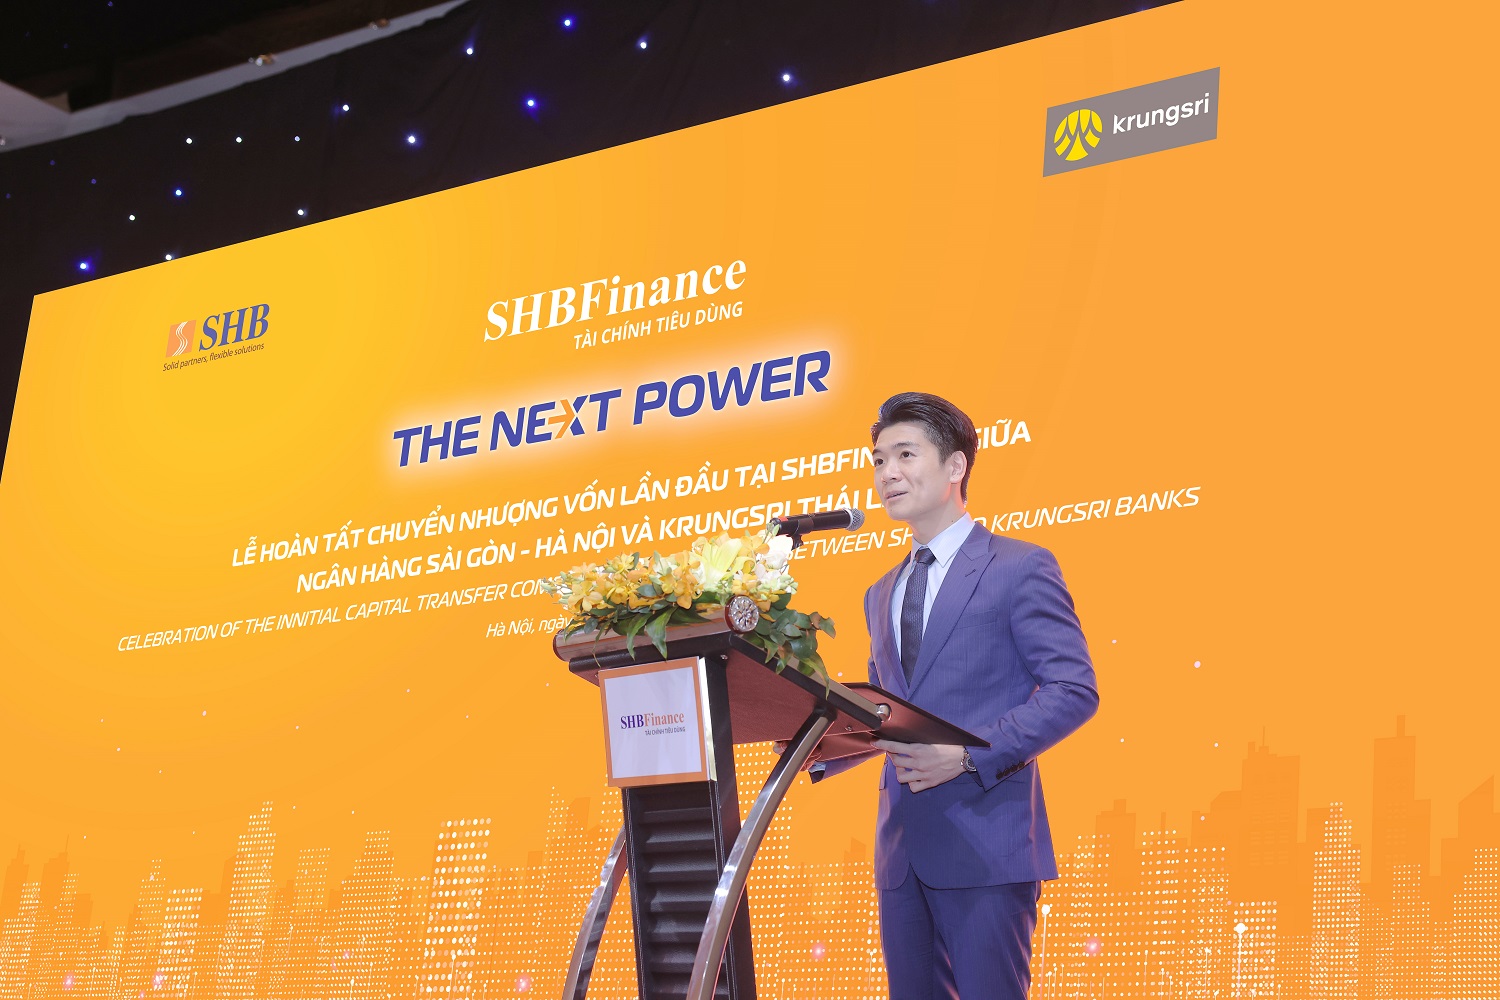 SHBFinance chính thức trở thành thành viên của Tập đoàn Krungsri Thái Lan - Ảnh 2.